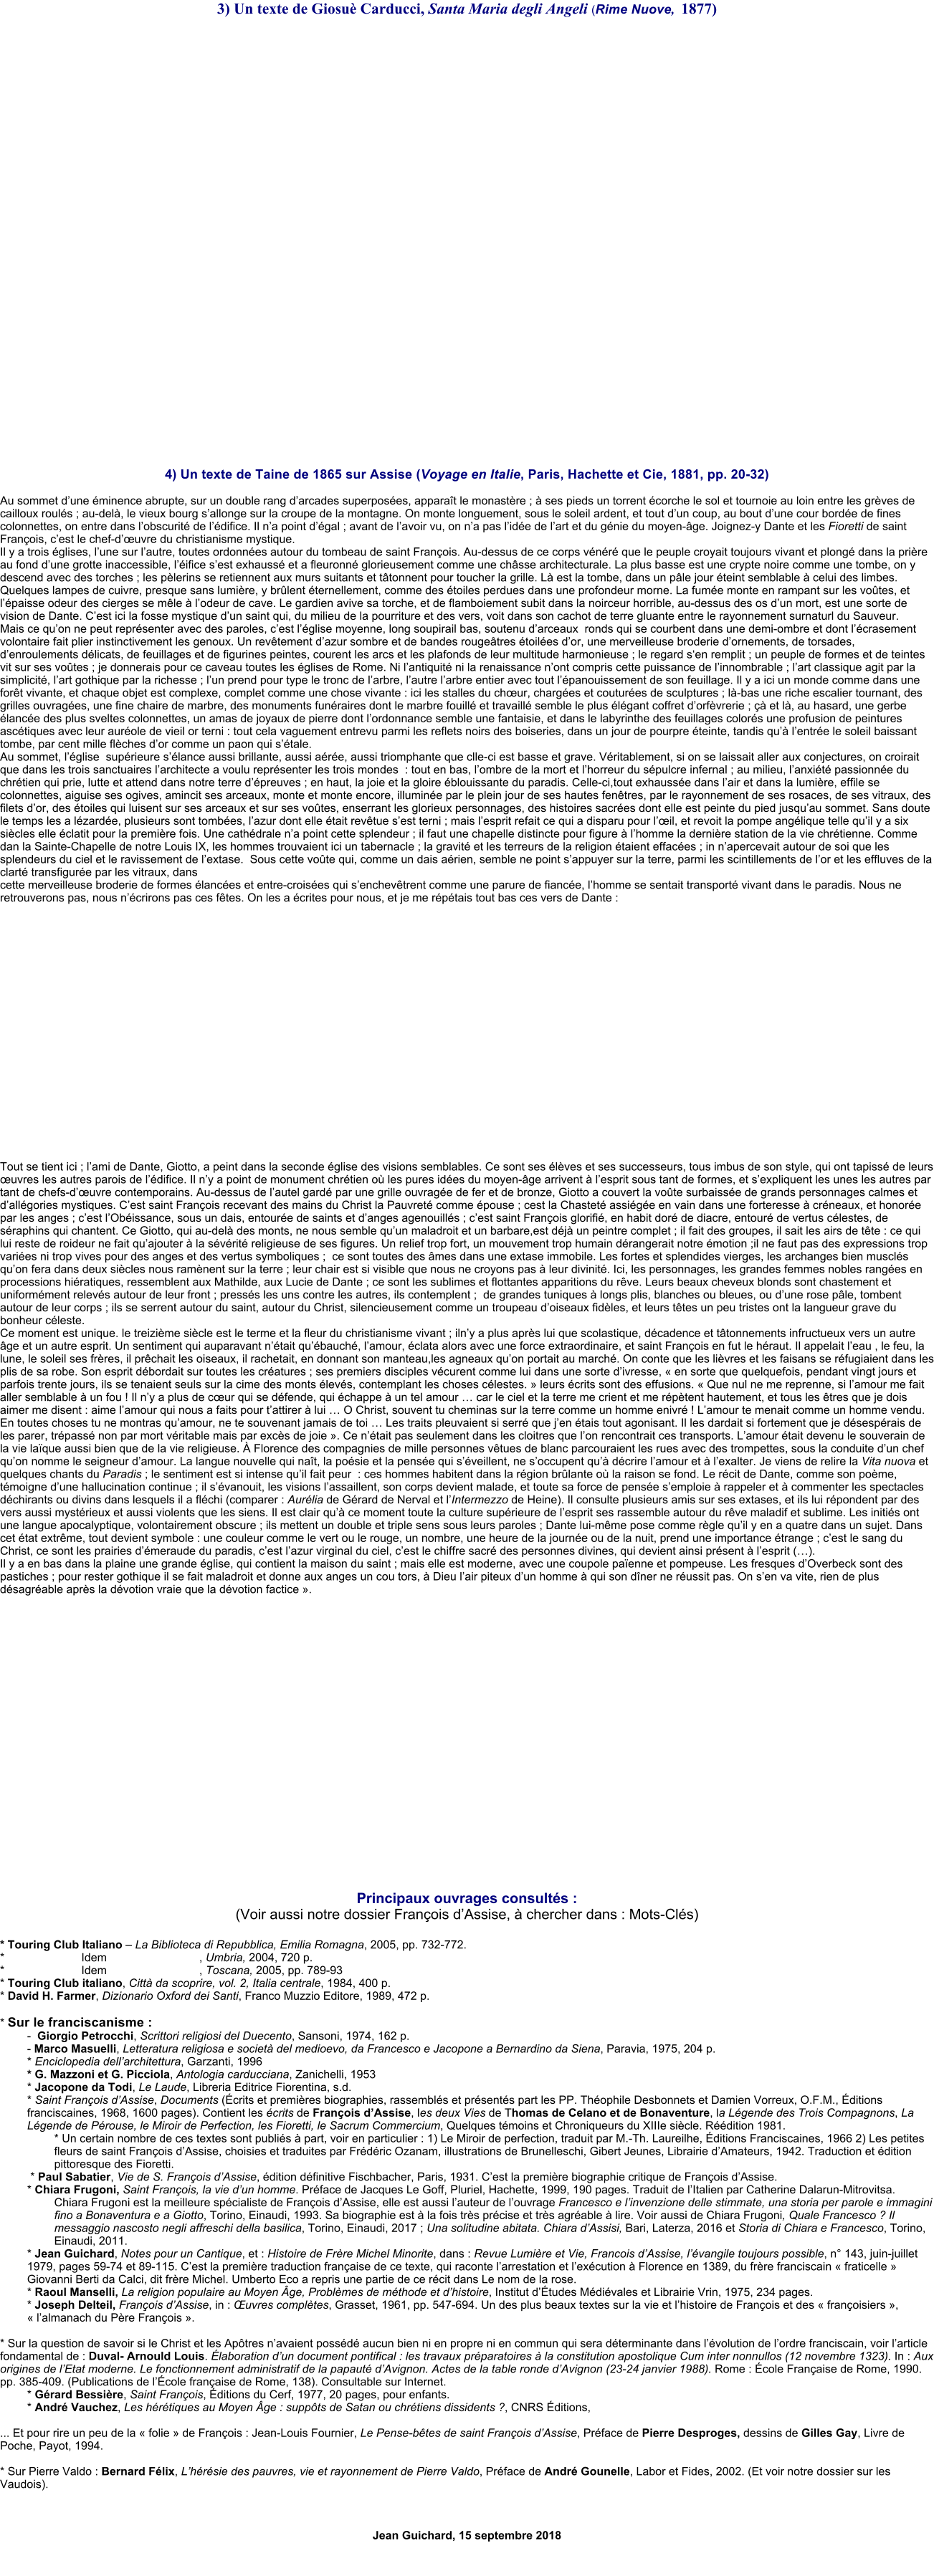 3) Un texte de Giosu Carducci, Santa Maria degli Angeli (Rime Nuove,  1877)                  4) Un texte de Taine de 1865 sur Assise (Voyage en Italie, Paris, Hachette et Cie, 1881, pp. 20-32)  Au sommet dune minence abrupte, sur un double rang darcades superposes, apparat le monastre ;  ses pieds un torrent corche le sol et tournoie au loin entre les grves de cailloux rouls ; au-del, le vieux bourg sallonge sur la croupe de la montagne. On monte longuement, sous le soleil ardent, et tout dun coup, au bout dune cour borde de fines colonnettes, on entre dans lobscurit de ldifice. Il na point dgal ; avant de lavoir vu, on na pas lide de lart et du gnie du moyen-ge. Joignez-y Dante et les Fioretti de saint Franois, cest le chef-duvre du christianisme mystique. Il y a trois glises, lune sur lautre, toutes ordonnes autour du tombeau de saint Franois. Au-dessus de ce corps vnr que le peuple croyait toujours vivant et plong dans la prire au fond dune grotte inaccessible, lifice sest exhauss et a fleuronn glorieusement comme une chsse architecturale. La plus basse est une crypte noire comme une tombe, on y descend avec des torches ; les plerins se retiennent aux murs suitants et ttonnent pour toucher la grille. L est la tombe, dans un ple jour teint semblable  celui des limbes. Quelques lampes de cuivre, presque sans lumire, y brlent ternellement, comme des toiles perdues dans une profondeur morne. La fume monte en rampant sur les votes, et lpaisse odeur des cierges se mle  lodeur de cave. Le gardien avive sa torche, et de flamboiement subit dans la noirceur horrible, au-dessus des os dun mort, est une sorte de vision de Dante. Cest ici la fosse mystique dun saint qui, du milieu de la pourriture et des vers, voit dans son cachot de terre gluante entre le rayonnement surnaturl du Sauveur. Mais ce quon ne peut reprsenter avec des paroles, cest lglise moyenne, long soupirail bas, soutenu darceaux  ronds qui se courbent dans une demi-ombre et dont lcrasement volontaire fait plier instinctivement les genoux. Un revtement dazur sombre et de bandes rougetres toiles dor, une merveilleuse broderie dornements, de torsades, denroulements dlicats, de feuillages et de figurines peintes, courent les arcs et les plafonds de leur multitude harmonieuse ; le regard sen remplit ; un peuple de formes et de teintes vit sur ses votes ; je donnerais pour ce caveau toutes les glises de Rome. Ni lantiquit ni la renaissance nont compris cette puissance de linnombrable ; lart classique agit par la simplicit, lart gothique par la richesse ; lun prend pour type le tronc de larbre, lautre larbre entier avec tout lpanouissement de son feuillage. Il y a ici un monde comme dans une fort vivante, et chaque objet est complexe, complet comme une chose vivante : ici les stalles du chur, charges et coutures de sculptures ; l-bas une riche escalier tournant, des grilles ouvrages, une fine chaire de marbre, des monuments funraires dont le marbre fouill et travaill semble le plus lgant coffret dorfvrerie ;  et l, au hasard, une gerbe lance des plus sveltes colonnettes, un amas de joyaux de pierre dont lordonnance semble une fantaisie, et dans le labyrinthe des feuillages colors une profusion de peintures asctiques avec leur aurole de vieil or terni : tout cela vaguement entrevu parmi les reflets noirs des boiseries, dans un jour de pourpre teinte, tandis qu lentre le soleil baissant tombe, par cent mille flches dor comme un paon qui stale. Au sommet, lglise  suprieure slance aussi brillante, aussi are, aussi triomphante que clle-ci est basse et grave. Vritablement, si on se laissait aller aux conjectures, on croirait que dans les trois sanctuaires larchitecte a voulu reprsenter les trois mondes  : tout en bas, lombre de la mort et lhorreur du spulcre infernal ; au milieu, lanxit passionne du chrtien qui prie, lutte et attend dans notre terre dpreuves ; en haut, la joie et la gloire blouissante du paradis. Celle-ci,tout exhausse dans lair et dans la lumire, effile se colonnettes, aiguise ses ogives, amincit ses arceaux, monte et monte encore, illumine par le plein jour de ses hautes fentres, par le rayonnement de ses rosaces, de ses vitraux, des filets dor, des toiles qui luisent sur ses arceaux et sur ses votes, enserrant les glorieux personnages, des histoires sacres dont elle est peinte du pied jusquau sommet. Sans doute le temps les a lzarde, plusieurs sont tombes, lazur dont elle tait revtue sest terni ; mais lesprit refait ce qui a disparu pour lil, et revoit la pompe anglique telle quil y a six sicles elle clatit pour la premire fois. Une cathdrale na point cette splendeur ; il faut une chapelle distincte pour figure  lhomme la dernire station de la vie chrtienne. Comme dan la Sainte-Chapelle de notre Louis IX, les hommes trouvaient ici un tabernacle ; la gravit et les terreurs de la religion taient effaces ; in napercevait autour de soi que les splendeurs du ciel et le ravissement de lextase.  Sous cette vote qui, comme un dais arien, semble ne point sappuyer sur la terre, parmi les scintillements de lor et les effluves de la clart transfigure par les vitraux, dans  cette merveilleuse broderie de formes lances et entre-croises qui senchevtrent comme une parure de fiance, lhomme se sentait transport vivant dans le paradis. Nous ne retrouverons pas, nous ncrirons pas ces ftes. On les a crites pour nous, et je me rptais tout bas ces vers de Dante :                     Tout se tient ici ; lami de Dante, Giotto, a peint dans la seconde glise des visions semblables. Ce sont ses lves et ses successeurs, tous imbus de son style, qui ont tapiss de leurs uvres les autres parois de ldifice. Il ny a point de monument chrtien o les pures ides du moyen-ge arrivent  lesprit sous tant de formes, et sexpliquent les unes les autres par tant de chefs-duvre contemporains. Au-dessus de lautel gard par une grille ouvrage de fer et de bronze, Giotto a couvert la vote surbaisse de grands personnages calmes et dallgories mystiques. Cest saint Franois recevant des mains du Christ la Pauvret comme pouse ; cest la Chastet assige en vain dans une forteresse  crneaux, et honore par les anges ; cest lObissance, sous un dais, entoure de saints et danges agenouills ; cest saint Franois glorifi, en habit dor de diacre, entour de vertus clestes, de sraphins qui chantent. Ce Giotto, qui au-del des monts, ne nous semble quun maladroit et un barbare,est dj un peintre complet ; il fait des groupes, il sait les airs de tte : ce qui lui reste de roideur ne fait quajouter  la svrit religieuse de ses figures. Un relief trop fort, un mouvement trop humain drangerait notre motion ;il ne faut pas des expressions trop varies ni trop vives pour des anges et des vertus symboliques ;  ce sont toutes des mes dans une extase immobile. Les fortes et splendides vierges, les archanges bien muscls quon fera dans deux sicles nous ramnent sur la terre ; leur chair est si visible que nous ne croyons pas  leur divinit. Ici, les personnages, les grandes femmes nobles ranges en processions hiratiques, ressemblent aux Mathilde, aux Lucie de Dante ; ce sont les sublimes et flottantes apparitions du rve. Leurs beaux cheveux blonds sont chastement et uniformment relevs autour de leur front ; presss les uns contre les autres, ils contemplent ;  de grandes tuniques  longs plis, blanches ou bleues, ou dune rose ple, tombent autour de leur corps ; ils se serrent autour du saint, autour du Christ, silencieusement comme un troupeau doiseaux fidles, et leurs ttes un peu tristes ont la langueur grave du bonheur cleste. Ce moment est unique. le treizime sicle est le terme et la fleur du christianisme vivant ; ilny a plus aprs lui que scolastique, dcadence et ttonnements infructueux vers un autre ge et un autre esprit. Un sentiment qui auparavant ntait qubauch, lamour, clata alors avec une force extraordinaire, et saint Franois en fut le hraut. Il appelait leau , le feu, la lune, le soleil ses frres, il prchait les oiseaux, il rachetait, en donnant son manteau,les agneaux quon portait au march. On conte que les livres et les faisans se rfugiaient dans les plis de sa robe. Son esprit dbordait sur toutes les cratures ; ses premiers disciples vcurent comme lui dans une sorte divresse,  en sorte que quelquefois, pendant vingt jours et parfois trente jours, ils se tenaient seuls sur la cime des monts levs, contemplant les choses clestes.  leurs crits sont des effusions.  Que nul ne me reprenne, si lamour me fait aller semblable  un fou ! Il ny a plus de cur qui se dfende, qui chappe  un tel amour  car le ciel et la terre me crient et me rptent hautement, et tous les tres que je dois aimer me disent : aime lamour qui nous a faits pour tattirer  lui  O Christ, souvent tu cheminas sur la terre comme un homme enivr ! Lamour te menait comme un homme vendu. En toutes choses tu ne montras quamour, ne te souvenant jamais de toi  Les traits pleuvaient si serr que jen tais tout agonisant. Il les dardait si fortement que je dsesprais de les parer, trpass non par mort vritable mais par excs de joie . Ce ntait pas seulement dans les cloitres que lon rencontrait ces transports. Lamour tait devenu le souverain de la vie laque aussi bien que de la vie religieuse.  Florence des compagnies de mille personnes vtues de blanc parcouraient les rues avec des trompettes, sous la conduite dun chef quon nomme le seigneur damour. La langue nouvelle qui nat, la posie et la pense qui sveillent, ne soccupent qu dcrire lamour et  lexalter. Je viens de relire la Vita nuova et quelques chants du Paradis ; le sentiment est si intense quil fait peur  : ces hommes habitent dans la rgion brlante o la raison se fond. Le rcit de Dante, comme son pome, tmoigne dune hallucination continue ; il svanouit, les visions lassaillent, son corps devient malade, et toute sa force de pense semploie  rappeler et  commenter les spectacles dchirants ou divins dans lesquels il a flchi (comparer : Aurlia de Grard de Nerval et lIntermezzo de Heine). Il consulte plusieurs amis sur ses extases, et ils lui rpondent par des vers aussi mystrieux et aussi violents que les siens. Il est clair qu ce moment toute la culture suprieure de lesprit ses rassemble autour du rve maladif et sublime. Les initis ont une langue apocalyptique, volontairement obscure ; ils mettent un double et triple sens sous leurs paroles ; Dante lui-mme pose comme rgle quil y en a quatre dans un sujet. Dans cet tat extrme, tout devient symbole : une couleur comme le vert ou le rouge, un nombre, une heure de la journe ou de la nuit, prend une importance trange ; cest le sang du Christ, ce sont les prairies dmeraude du paradis, cest lazur virginal du ciel, cest le chiffre sacr des personnes divines, qui devient ainsi prsent  lesprit (). Il y a en bas dans la plaine une grande glise, qui contient la maison du saint ; mais elle est moderne, avec une coupole paenne et pompeuse. Les fresques dOverbeck sont des pastiches ; pour rester gothique il se fait maladroit et donne aux anges un cou tors,  Dieu lair piteux dun homme  qui son dner ne russit pas. On sen va vite, rien de plus dsagrable aprs la dvotion vraie que la dvotion factice .                        Principaux ouvrages consults : (Voir aussi notre dossier Franois dAssise,  chercher dans : Mots-Cls)  * Touring Club Italiano  La Biblioteca di Repubblica, Emilia Romagna, 2005, pp. 732-772. * 			Idem				   , Umbria, 2004, 720 p. * 			Idem				   , Toscana, 2005, pp. 789-93 * Touring Club italiano, Citt da scoprire, vol. 2, Italia centrale, 1984, 400 p. * David H. Farmer, Dizionario Oxford dei Santi, Franco Muzzio Editore, 1989, 472 p.  * Sur le franciscanisme : 	-  Giorgio Petrocchi, Scrittori religiosi del Duecento, Sansoni, 1974, 162 p. 	- Marco Masuelli, Letteratura religiosa e societ del medioevo, da Francesco e Jacopone a Bernardino da Siena, Paravia, 1975, 204 p. * Enciclopedia dellarchitettura, Garzanti, 1996 * G. Mazzoni et G. Picciola, Antologia carducciana, Zanichelli, 1953 * Jacopone da Todi, Le Laude, Libreria Editrice Fiorentina, s.d. * Saint Franois dAssise, Documents (crits et premires biographies, rassembls et prsents part les PP. Thophile Desbonnets et Damien Vorreux, O.F.M., ditions franciscaines, 1968, 1600 pages). Contient les crits de Franois dAssise, les deux Vies de Thomas de Celano et de Bonaventure, la Lgende des Trois Compagnons, La Lgende de Prouse, le Miroir de Perfection, les Fioretti, le Sacrum Commercium, Quelques tmoins et Chroniqueurs du XIIIe sicle. Rdition 1981. * Un certain nombre de ces textes sont publis  part, voir en particulier : 1) Le Miroir de perfection, traduit par M.-Th. Laureilhe, ditions Franciscaines, 1966 2) Les petites fleurs de saint Franois dAssise, choisies et traduites par Frdric Ozanam, illustrations de Brunelleschi, Gibert Jeunes, Librairie dAmateurs, 1942. Traduction et dition pittoresque des Fioretti.  * Paul Sabatier, Vie de S. Franois dAssise, dition dfinitive Fischbacher, Paris, 1931. Cest la premire biographie critique de Franois dAssise. * Chiara Frugoni, Saint Franois, la vie dun homme. Prface de Jacques Le Goff, Pluriel, Hachette, 1999, 190 pages. Traduit de lItalien par Catherine Dalarun-Mitrovitsa.  Chiara Frugoni est la meilleure spcialiste de Franois dAssise, elle est aussi lauteur de louvrage Francesco e linvenzione delle stimmate, una storia per parole e immagini fino a Bonaventura e a Giotto, Torino, Einaudi, 1993. Sa biographie est  la fois trs prcise et trs agrable  lire. Voir aussi de Chiara Frugoni, Quale Francesco ? Il messaggio nascosto negli affreschi della basilica, Torino, Einaudi, 2017 ; Una solitudine abitata. Chiara dAssisi, Bari, Laterza, 2016 et Storia di Chiara e Francesco, Torino, Einaudi, 2011. * Jean Guichard, Notes pour un Cantique, et : Histoire de Frre Michel Minorite, dans : Revue Lumire et Vie, Francois dAssise, lvangile toujours possible, n 143, juin-juillet 1979, pages 59-74 et 89-115. Cest la premire traduction franaise de ce texte, qui raconte larrestation et lexcution  Florence en 1389, du frre franciscain  fraticelle  Giovanni Berti da Calci, dit frre Michel. Umberto Eco a repris une partie de ce rcit dans Le nom de la rose. * Raoul Manselli, La religion populaire au Moyen ge, Problmes de mthode et dhistoire, Institut dtudes Mdivales et Librairie Vrin, 1975, 234 pages. * Joseph Delteil, Franois dAssise, in : uvres compltes, Grasset, 1961, pp. 547-694. Un des plus beaux textes sur la vie et lhistoire de Franois et des  franoisiers , lalmanach du Pre Franois .  * Sur la question de savoir si le Christ et les Aptres navaient possd aucun bien ni en propre ni en commun qui sera dterminante dans lvolution de lordre franciscain, voir larticle fondamental de : Duval- Arnould Louis. laboration dun document pontifical : les travaux prparatoires  la constitution apostolique Cum inter nonnullos (12 novembre 1323). In : Aux origines de lEtat moderne. Le fonctionnement administratif de la papaut dAvignon. Actes de la table ronde dAvignon (23-24 janvier 1988). Rome : cole Franaise de Rome, 1990. pp. 385-409. (Publications de lcole franaise de Rome, 138). Consultable sur Internet. * Grard Bessire, Saint Franois, ditions du Cerf, 1977, 20 pages, pour enfants.  * Andr Vauchez, Les hrtiques au Moyen ge : suppts de Satan ou chrtiens dissidents ?, CNRS ditions,  ... Et pour rire un peu de la  folie  de Franois : Jean-Louis Fournier, Le Pense-btes de saint Franois dAssise, Prface de Pierre Desproges, dessins de Gilles Gay, Livre de Poche, Payot, 1994.  * Sur Pierre Valdo : Bernard Flix, Lhrsie des pauvres, vie et rayonnement de Pierre Valdo, Prface de Andr Gounelle, Labor et Fides, 2002. (Et voir notre dossier sur les Vaudois).  								                                                  Jean Guichard, 15 septembre 2018